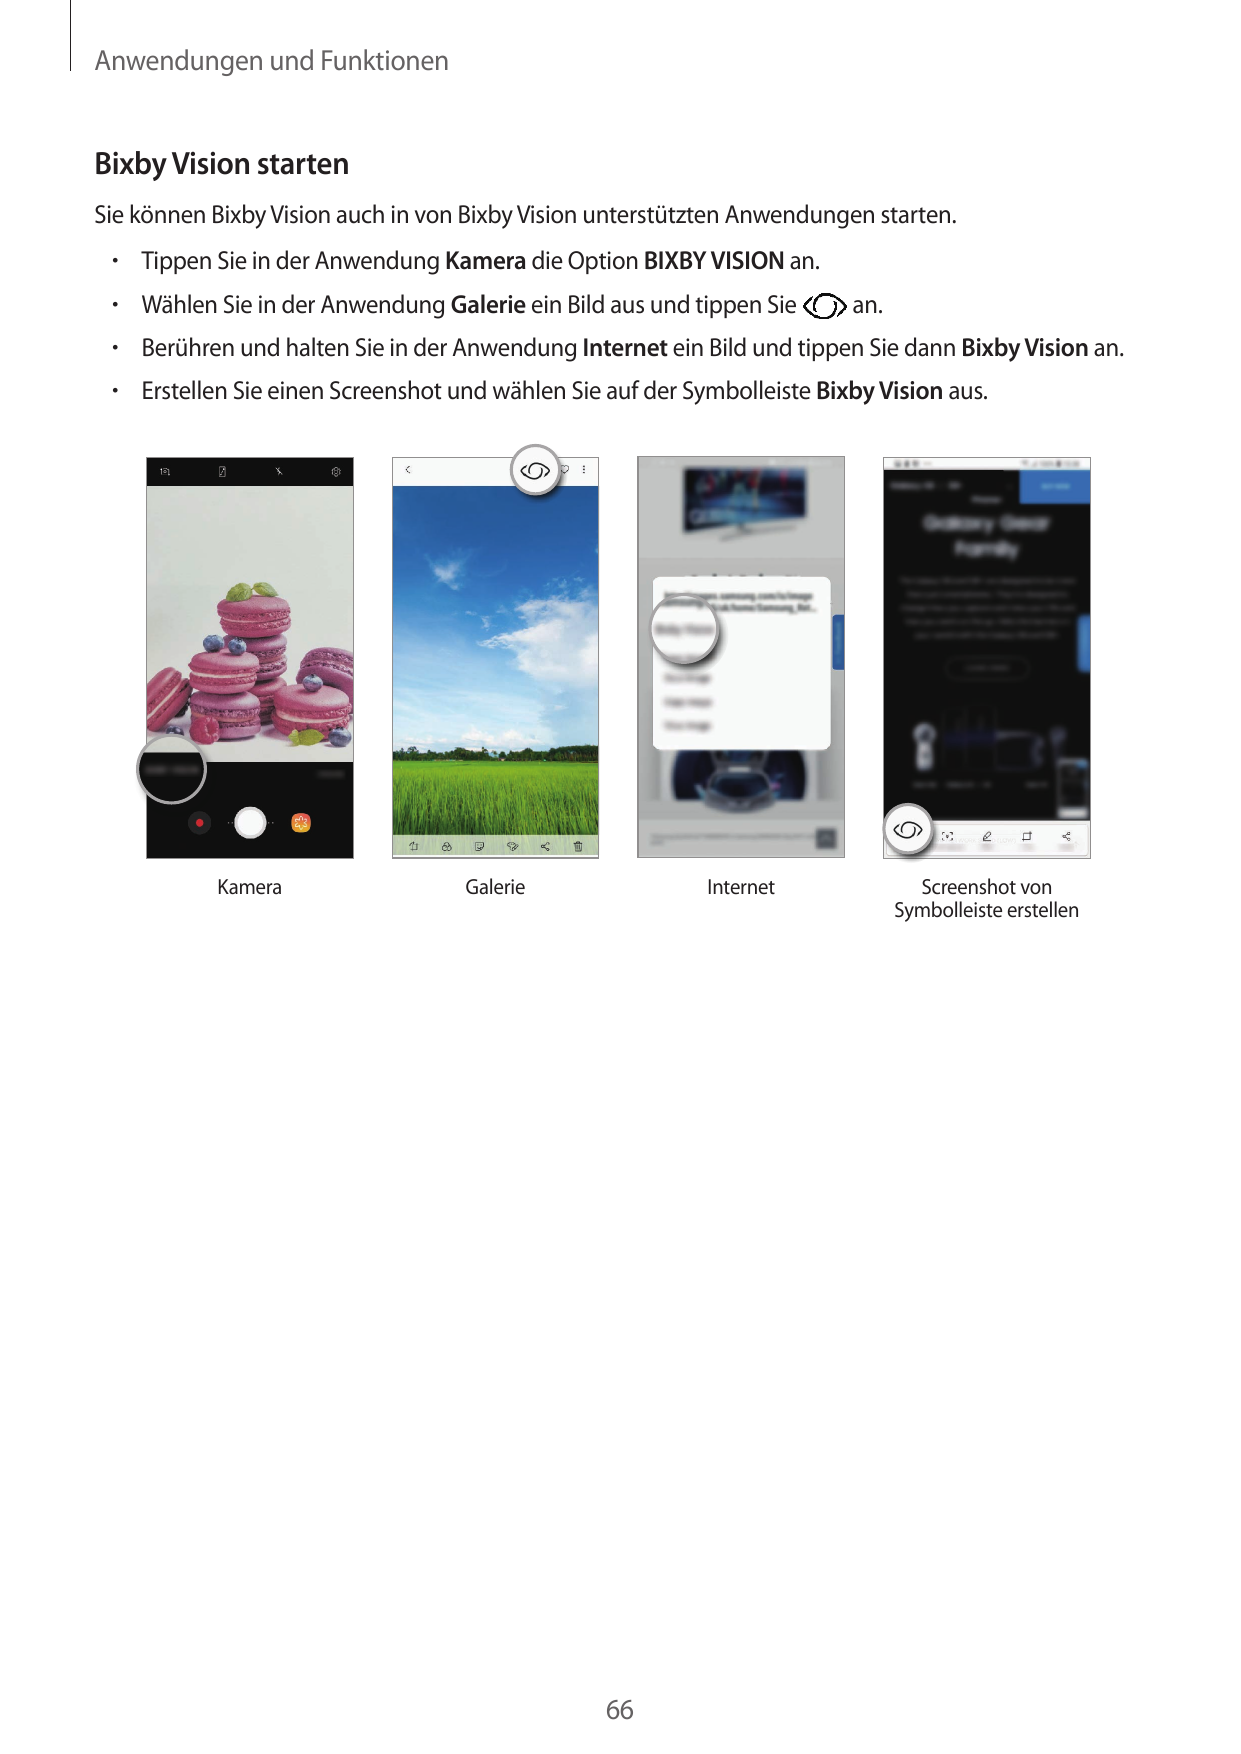 Anwendungen und FunktionenBixby Vision startenSie können Bixby Vision auch in von Bixby Vision unterstützten Anwendungen starten